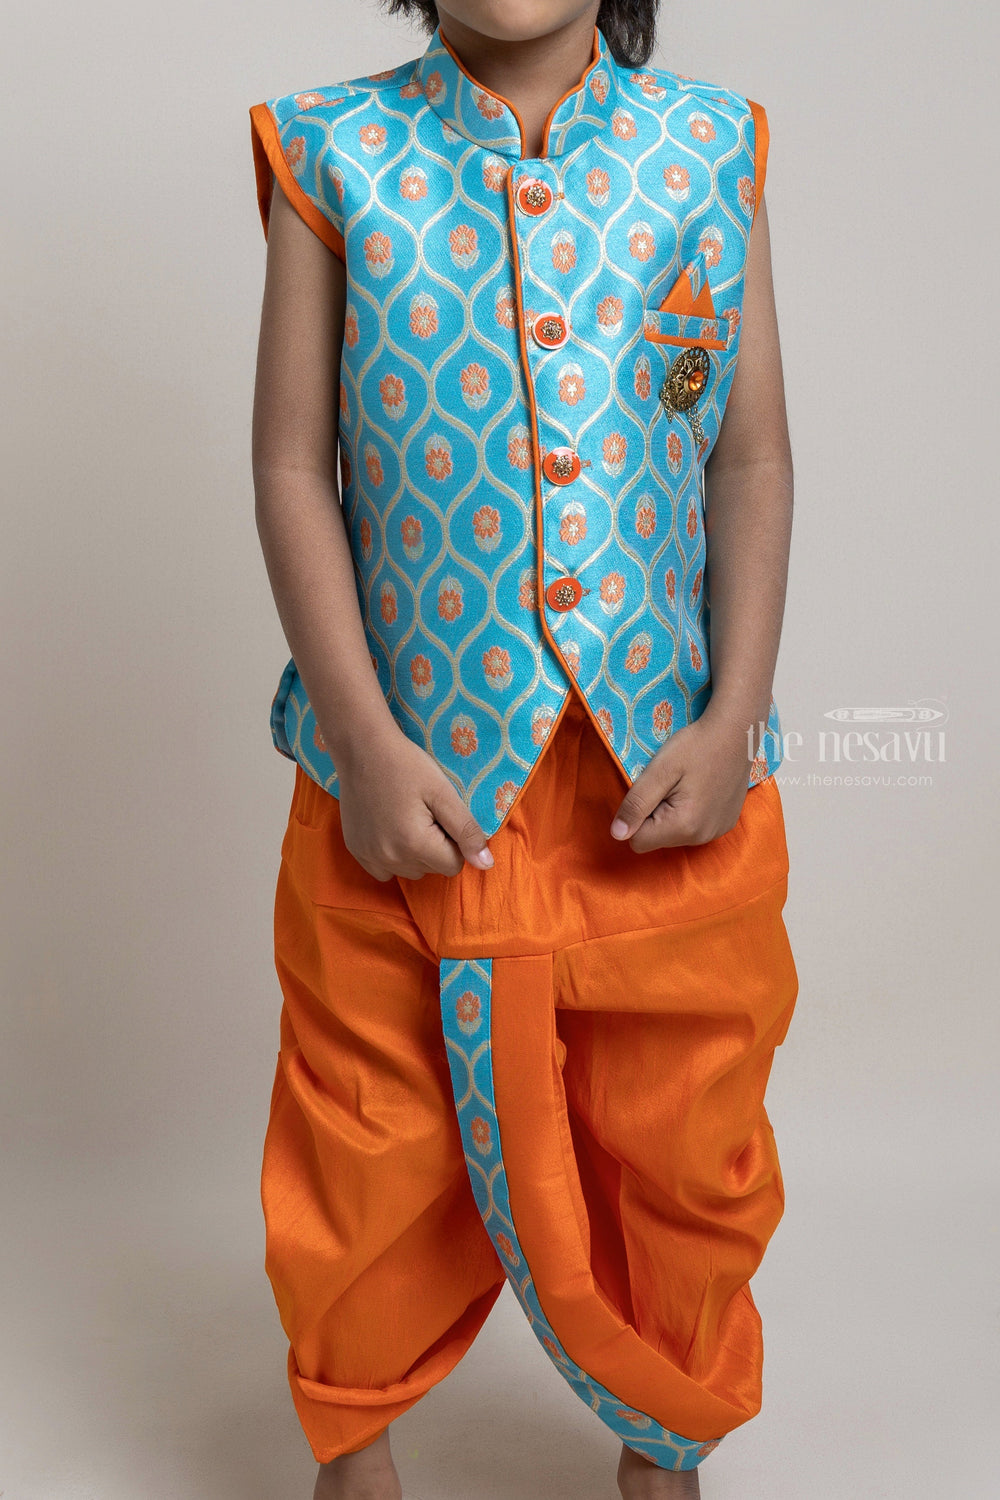 The Nesavu Boys Dothi Set Turquoise Stylish Ethnic Kurta With Orange Dhoti For Little Boys Nesavu Explore the Best Ethnic Wear Collection for Boys | The Nesavu